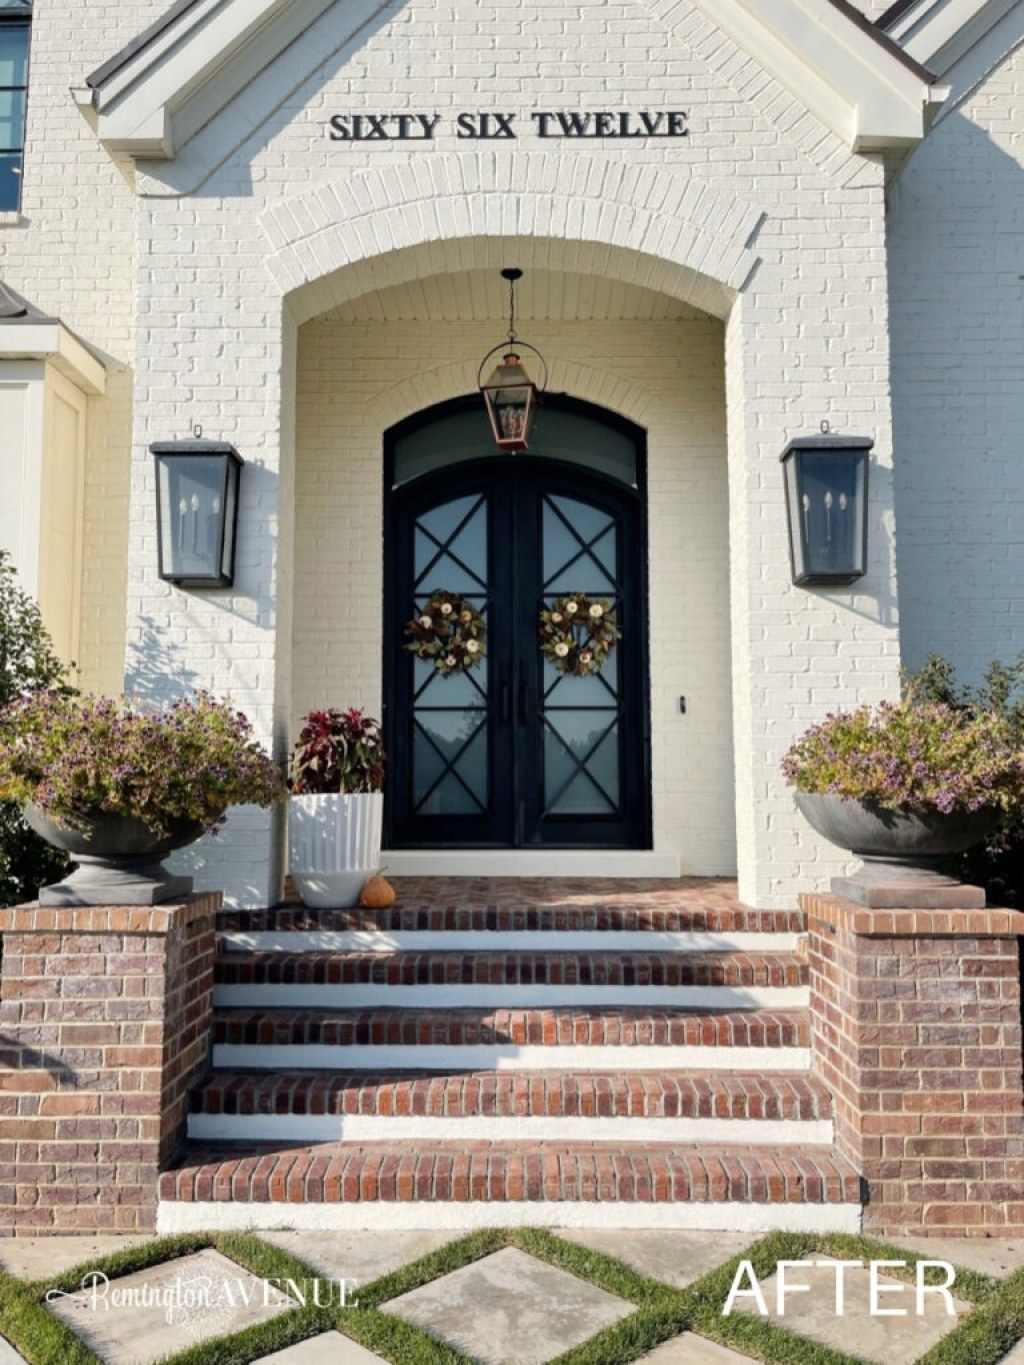 Picture of: Front Porch Brick Paver Tutorial – Remington Avenue